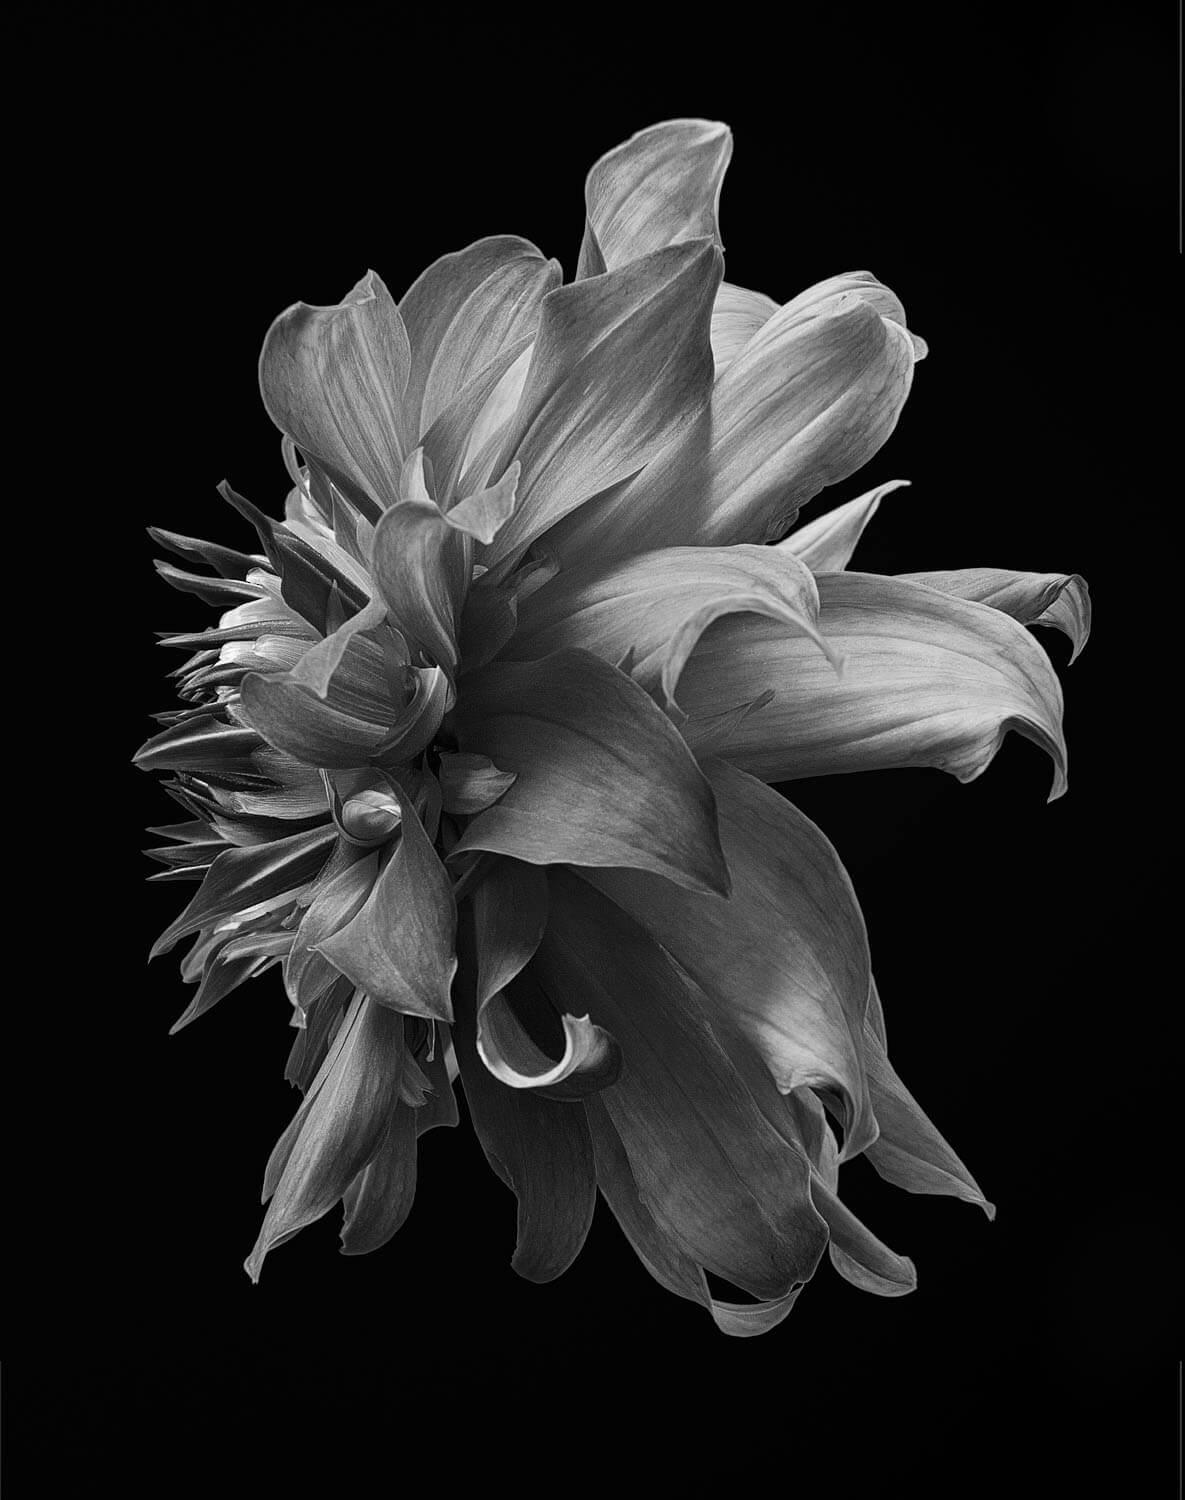 Schwarze Dahlia #3 - Philip Gatward, Zeitgenössische Fotografie, Blumen, Pflanzen